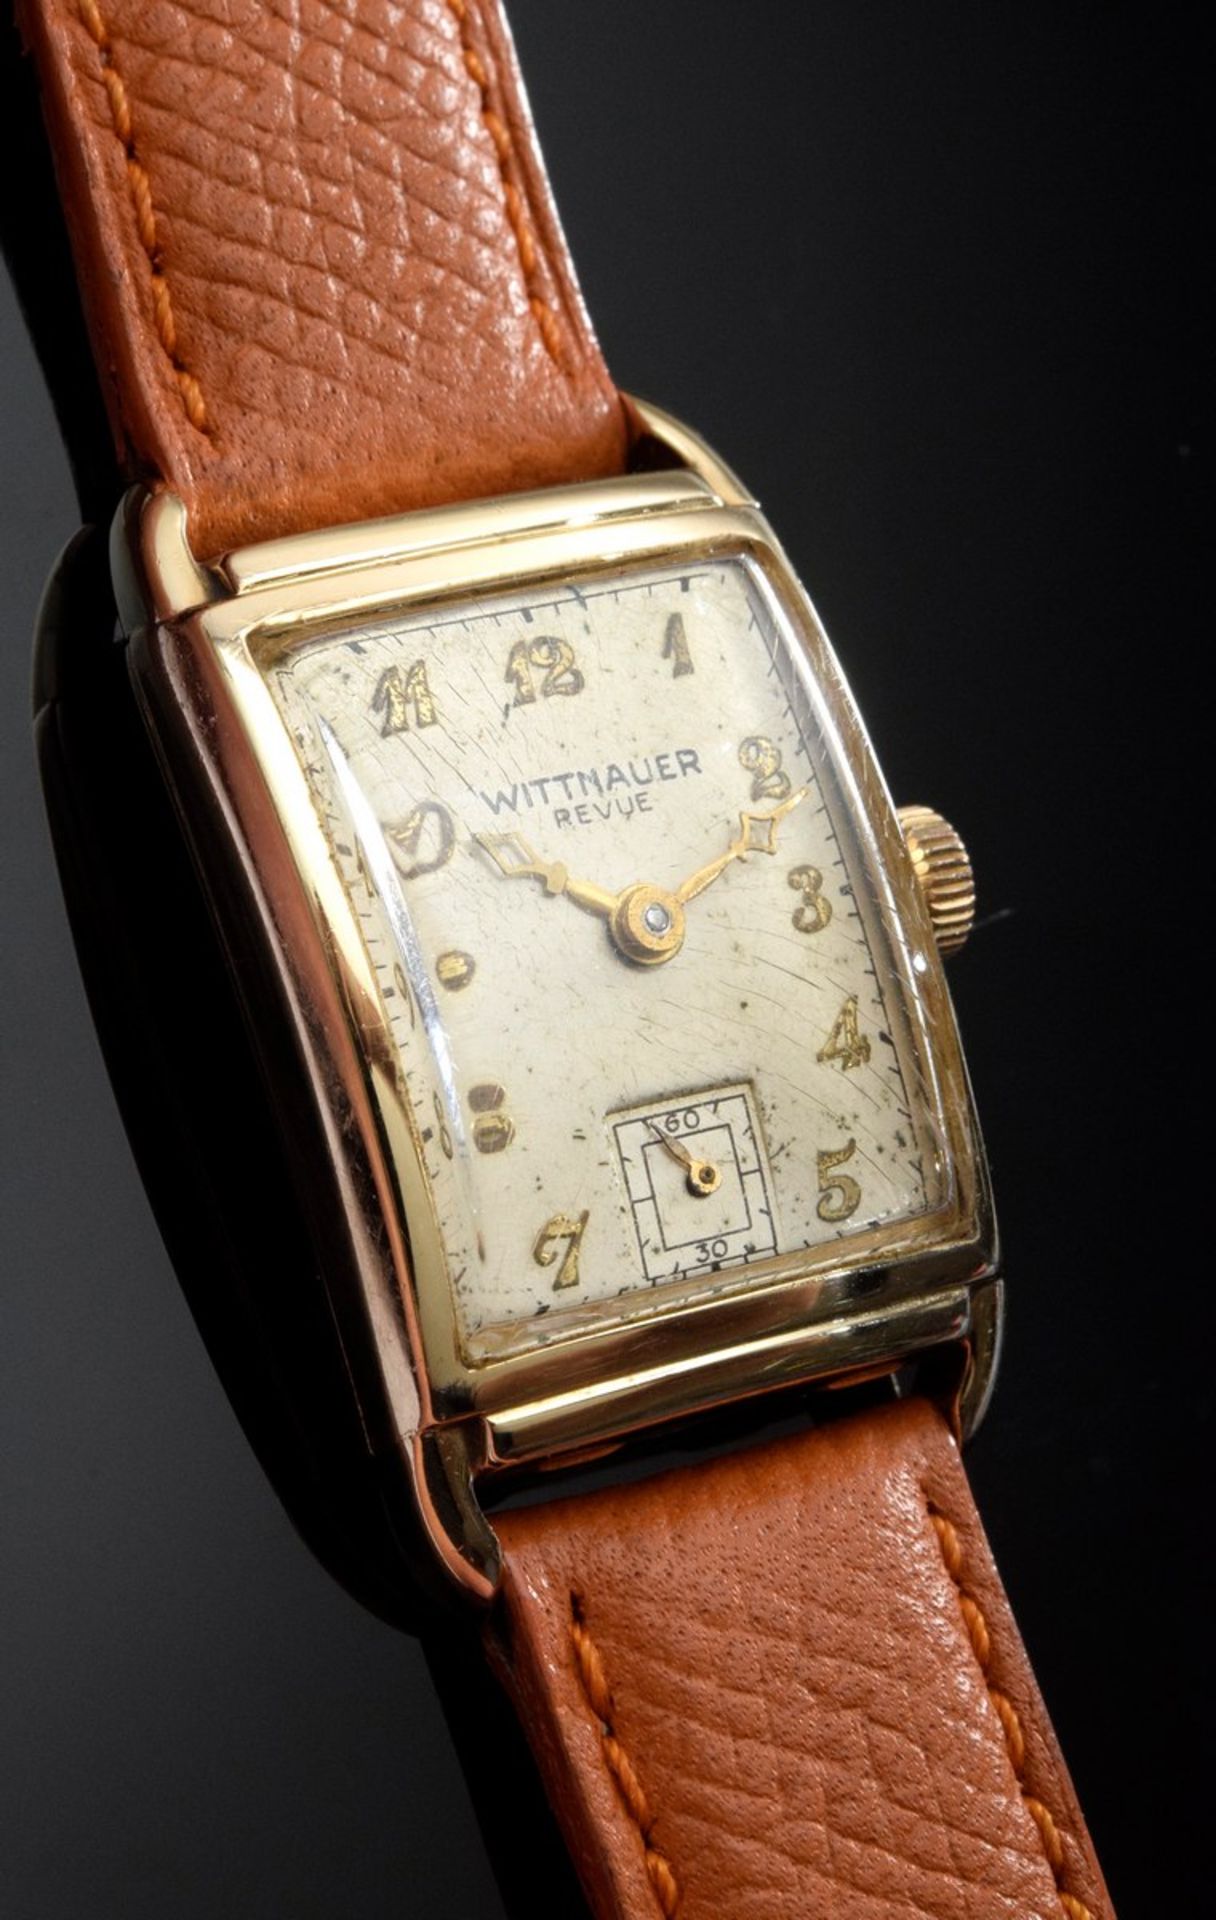 Elegante amerikanische GG 585 "Wittnauer Revue" Armbanduhr in Tankform, Handaufzug, silberweißes